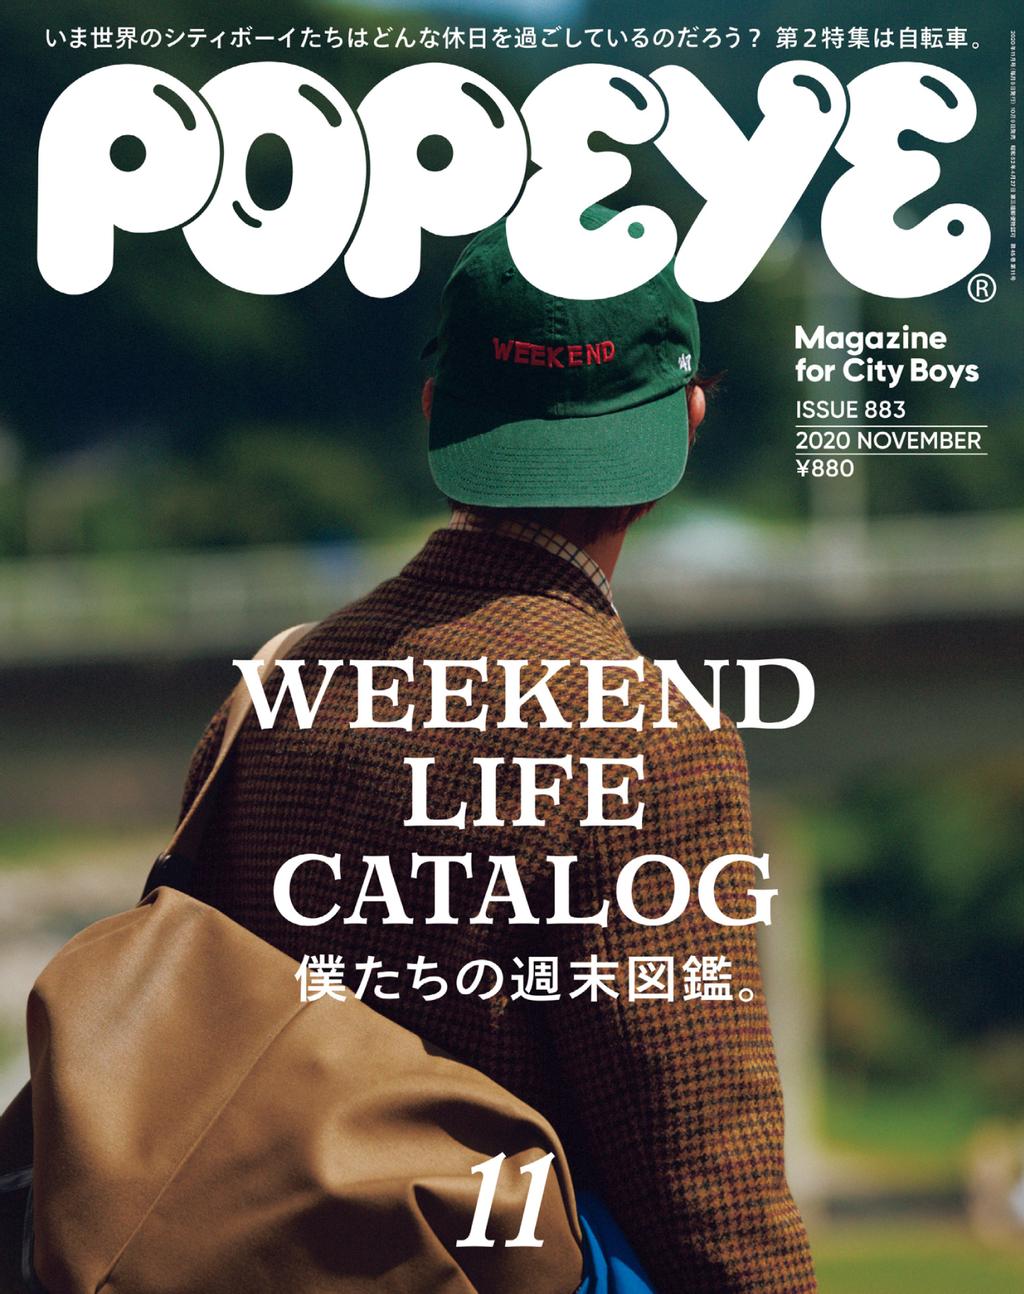 Popeye ポパイ 雑誌 バラ売OK - kailashparbat.ca